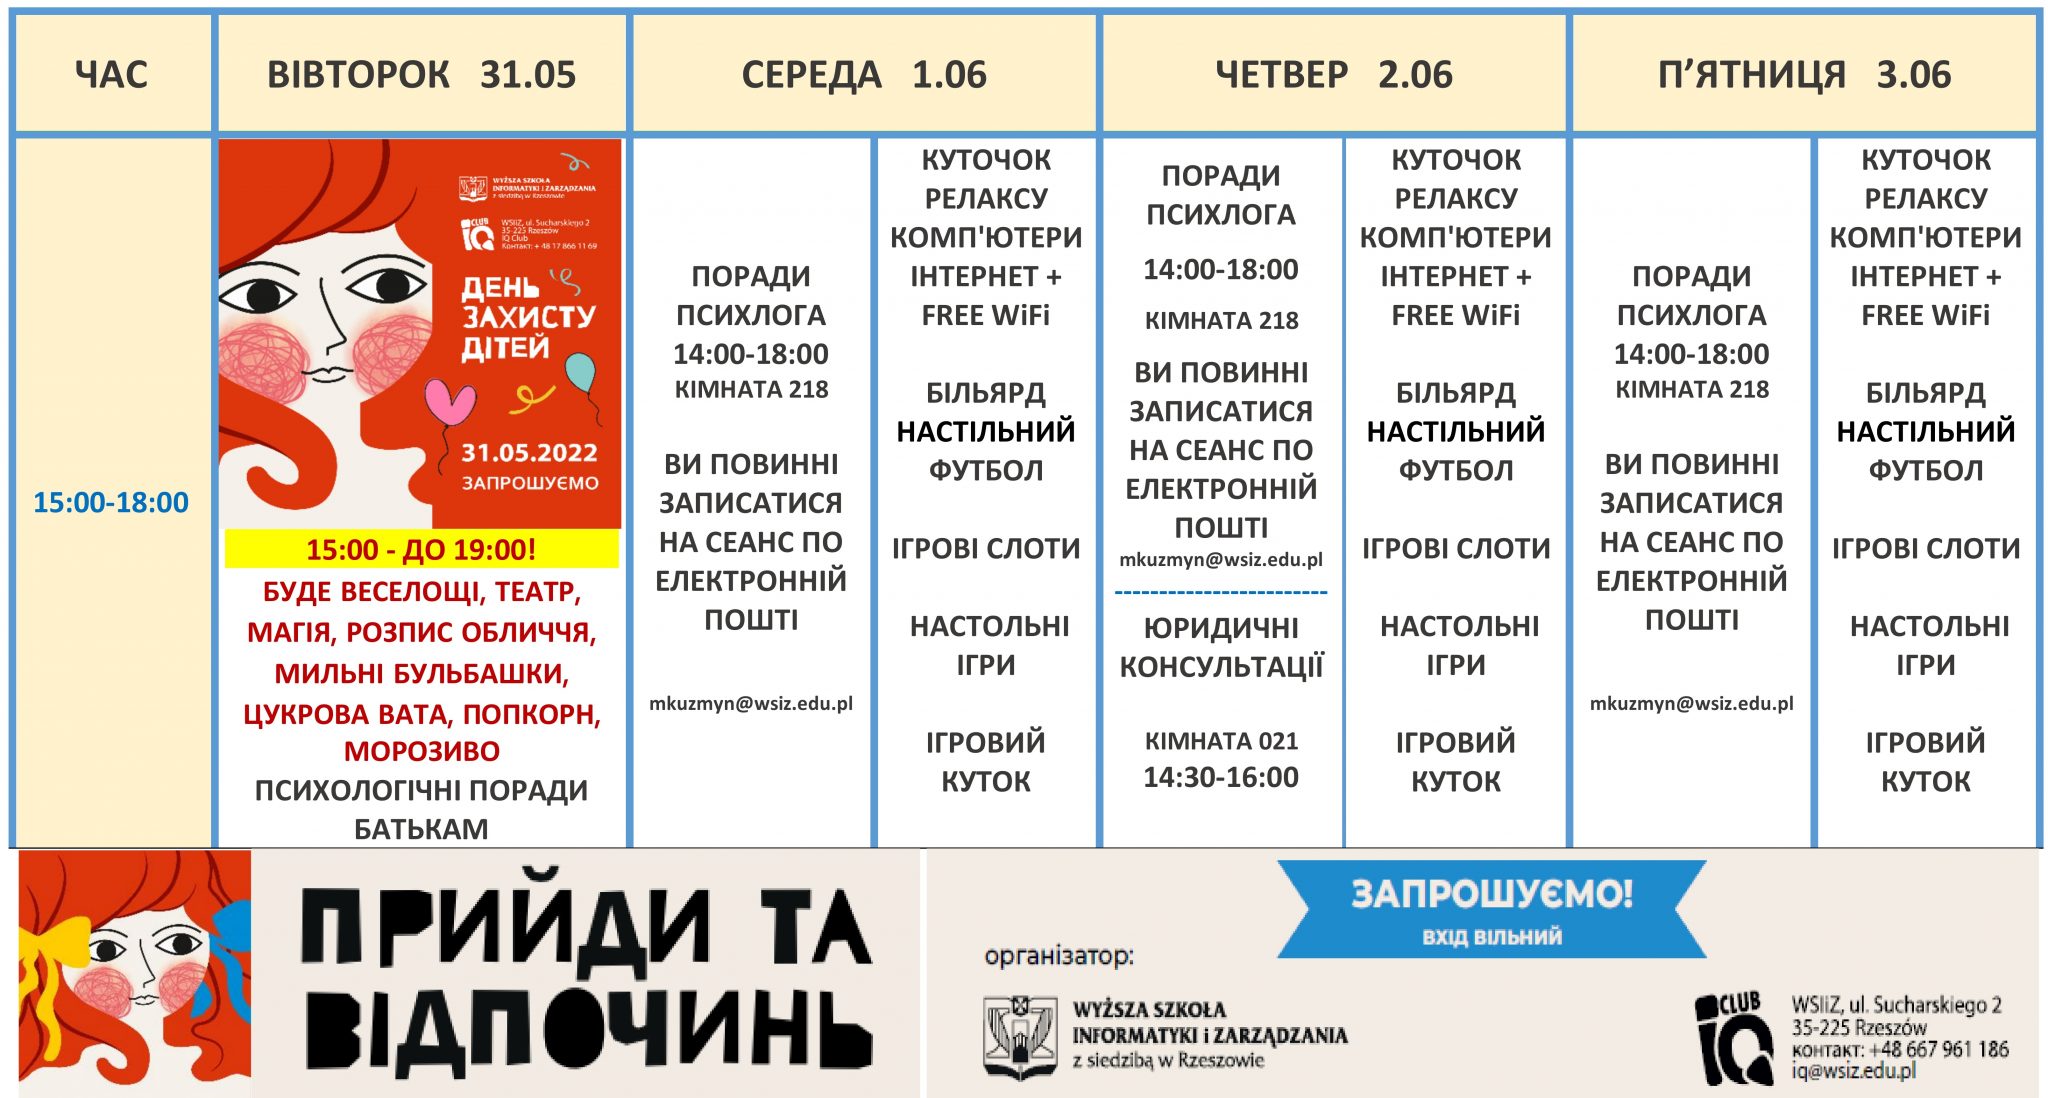 harmonogram w języku ukraińskim 